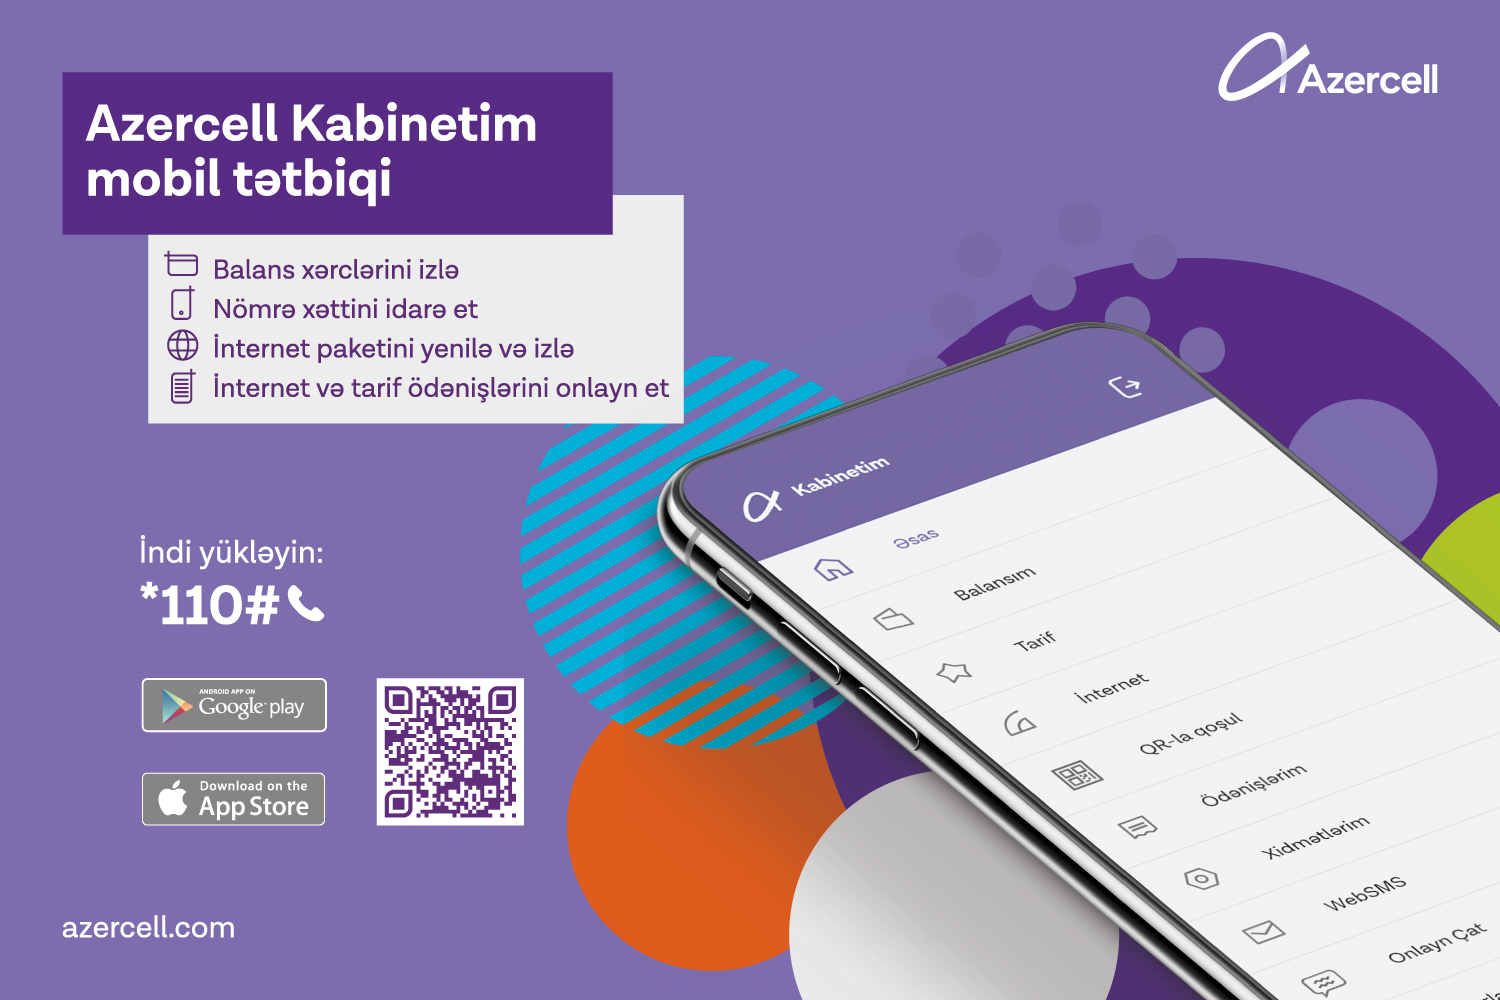 Обновленное мобильное приложение «Kabinetim» от Azercell